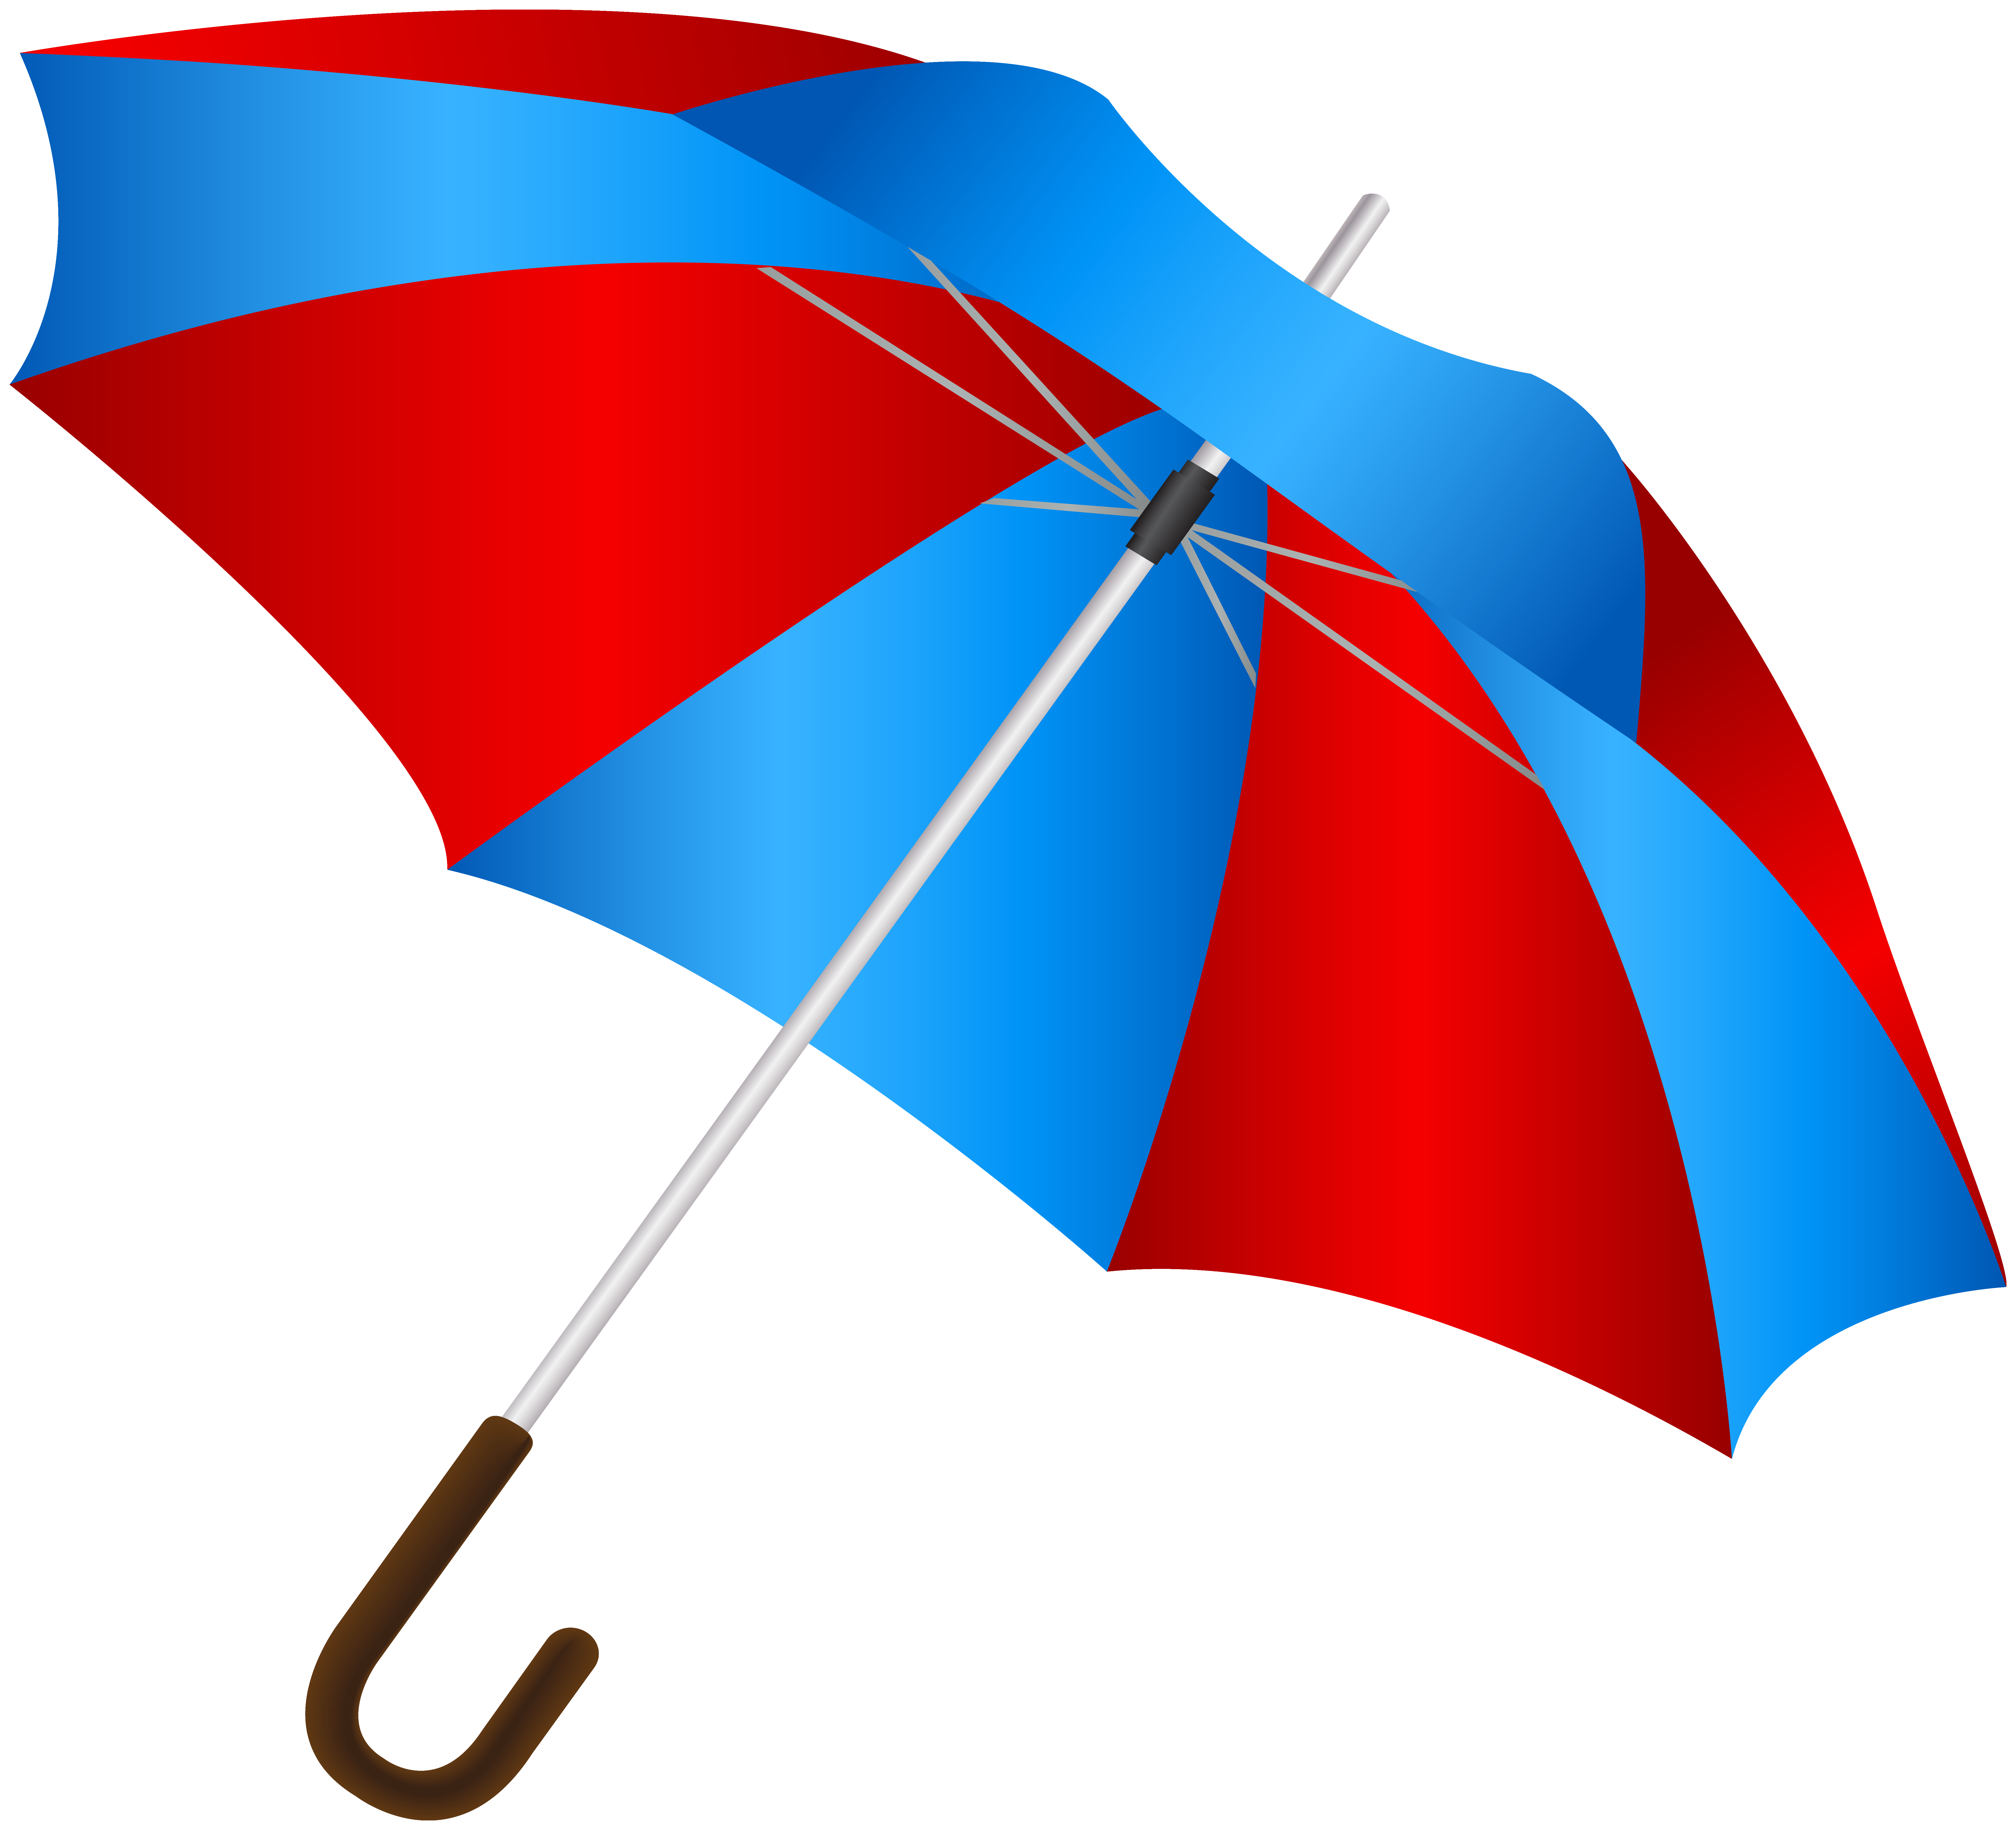 Blue Red Umbrella PNG Clip Art Image